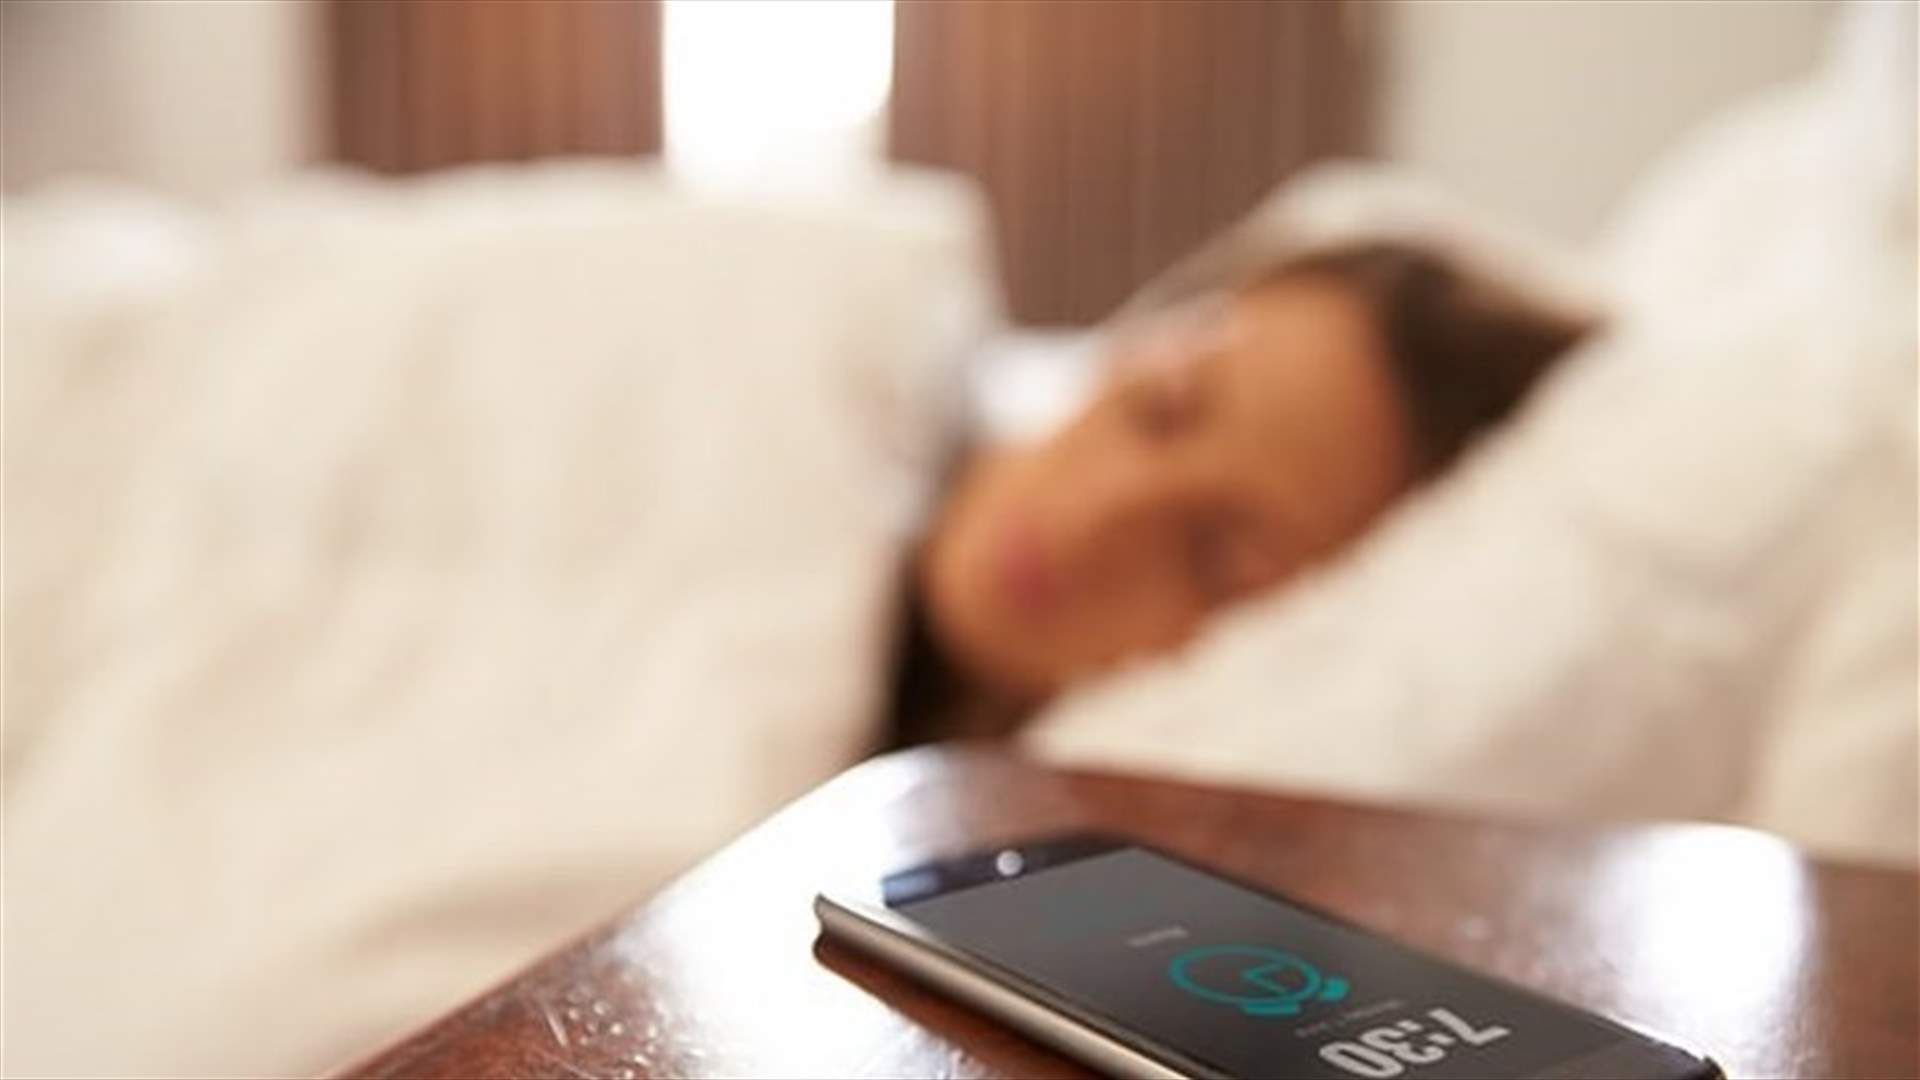 النوم بجانب هاتفك قد يعرضك للإحراج... كيف؟